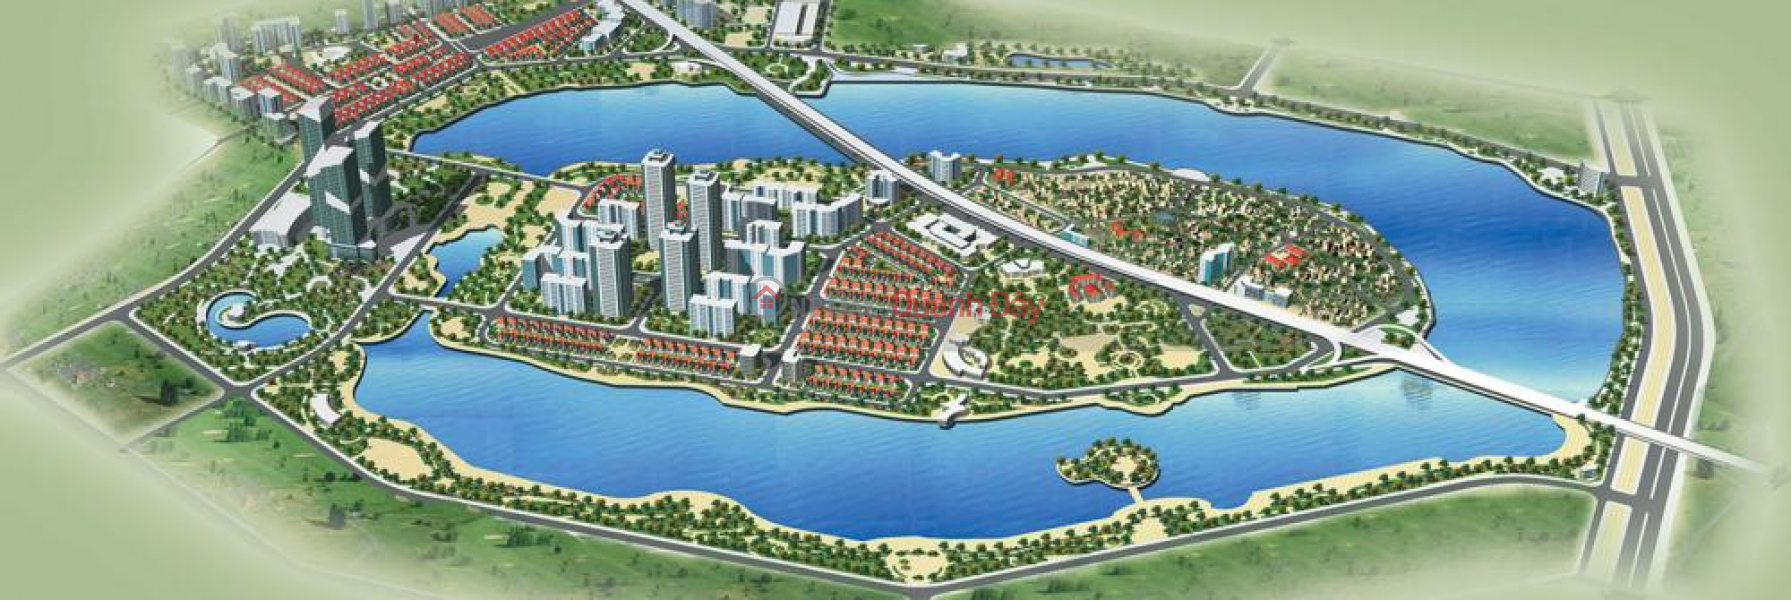 Khu đô thị Linh Đàm (Linh Dam new urban area) Hoàng Mai | ()(1)